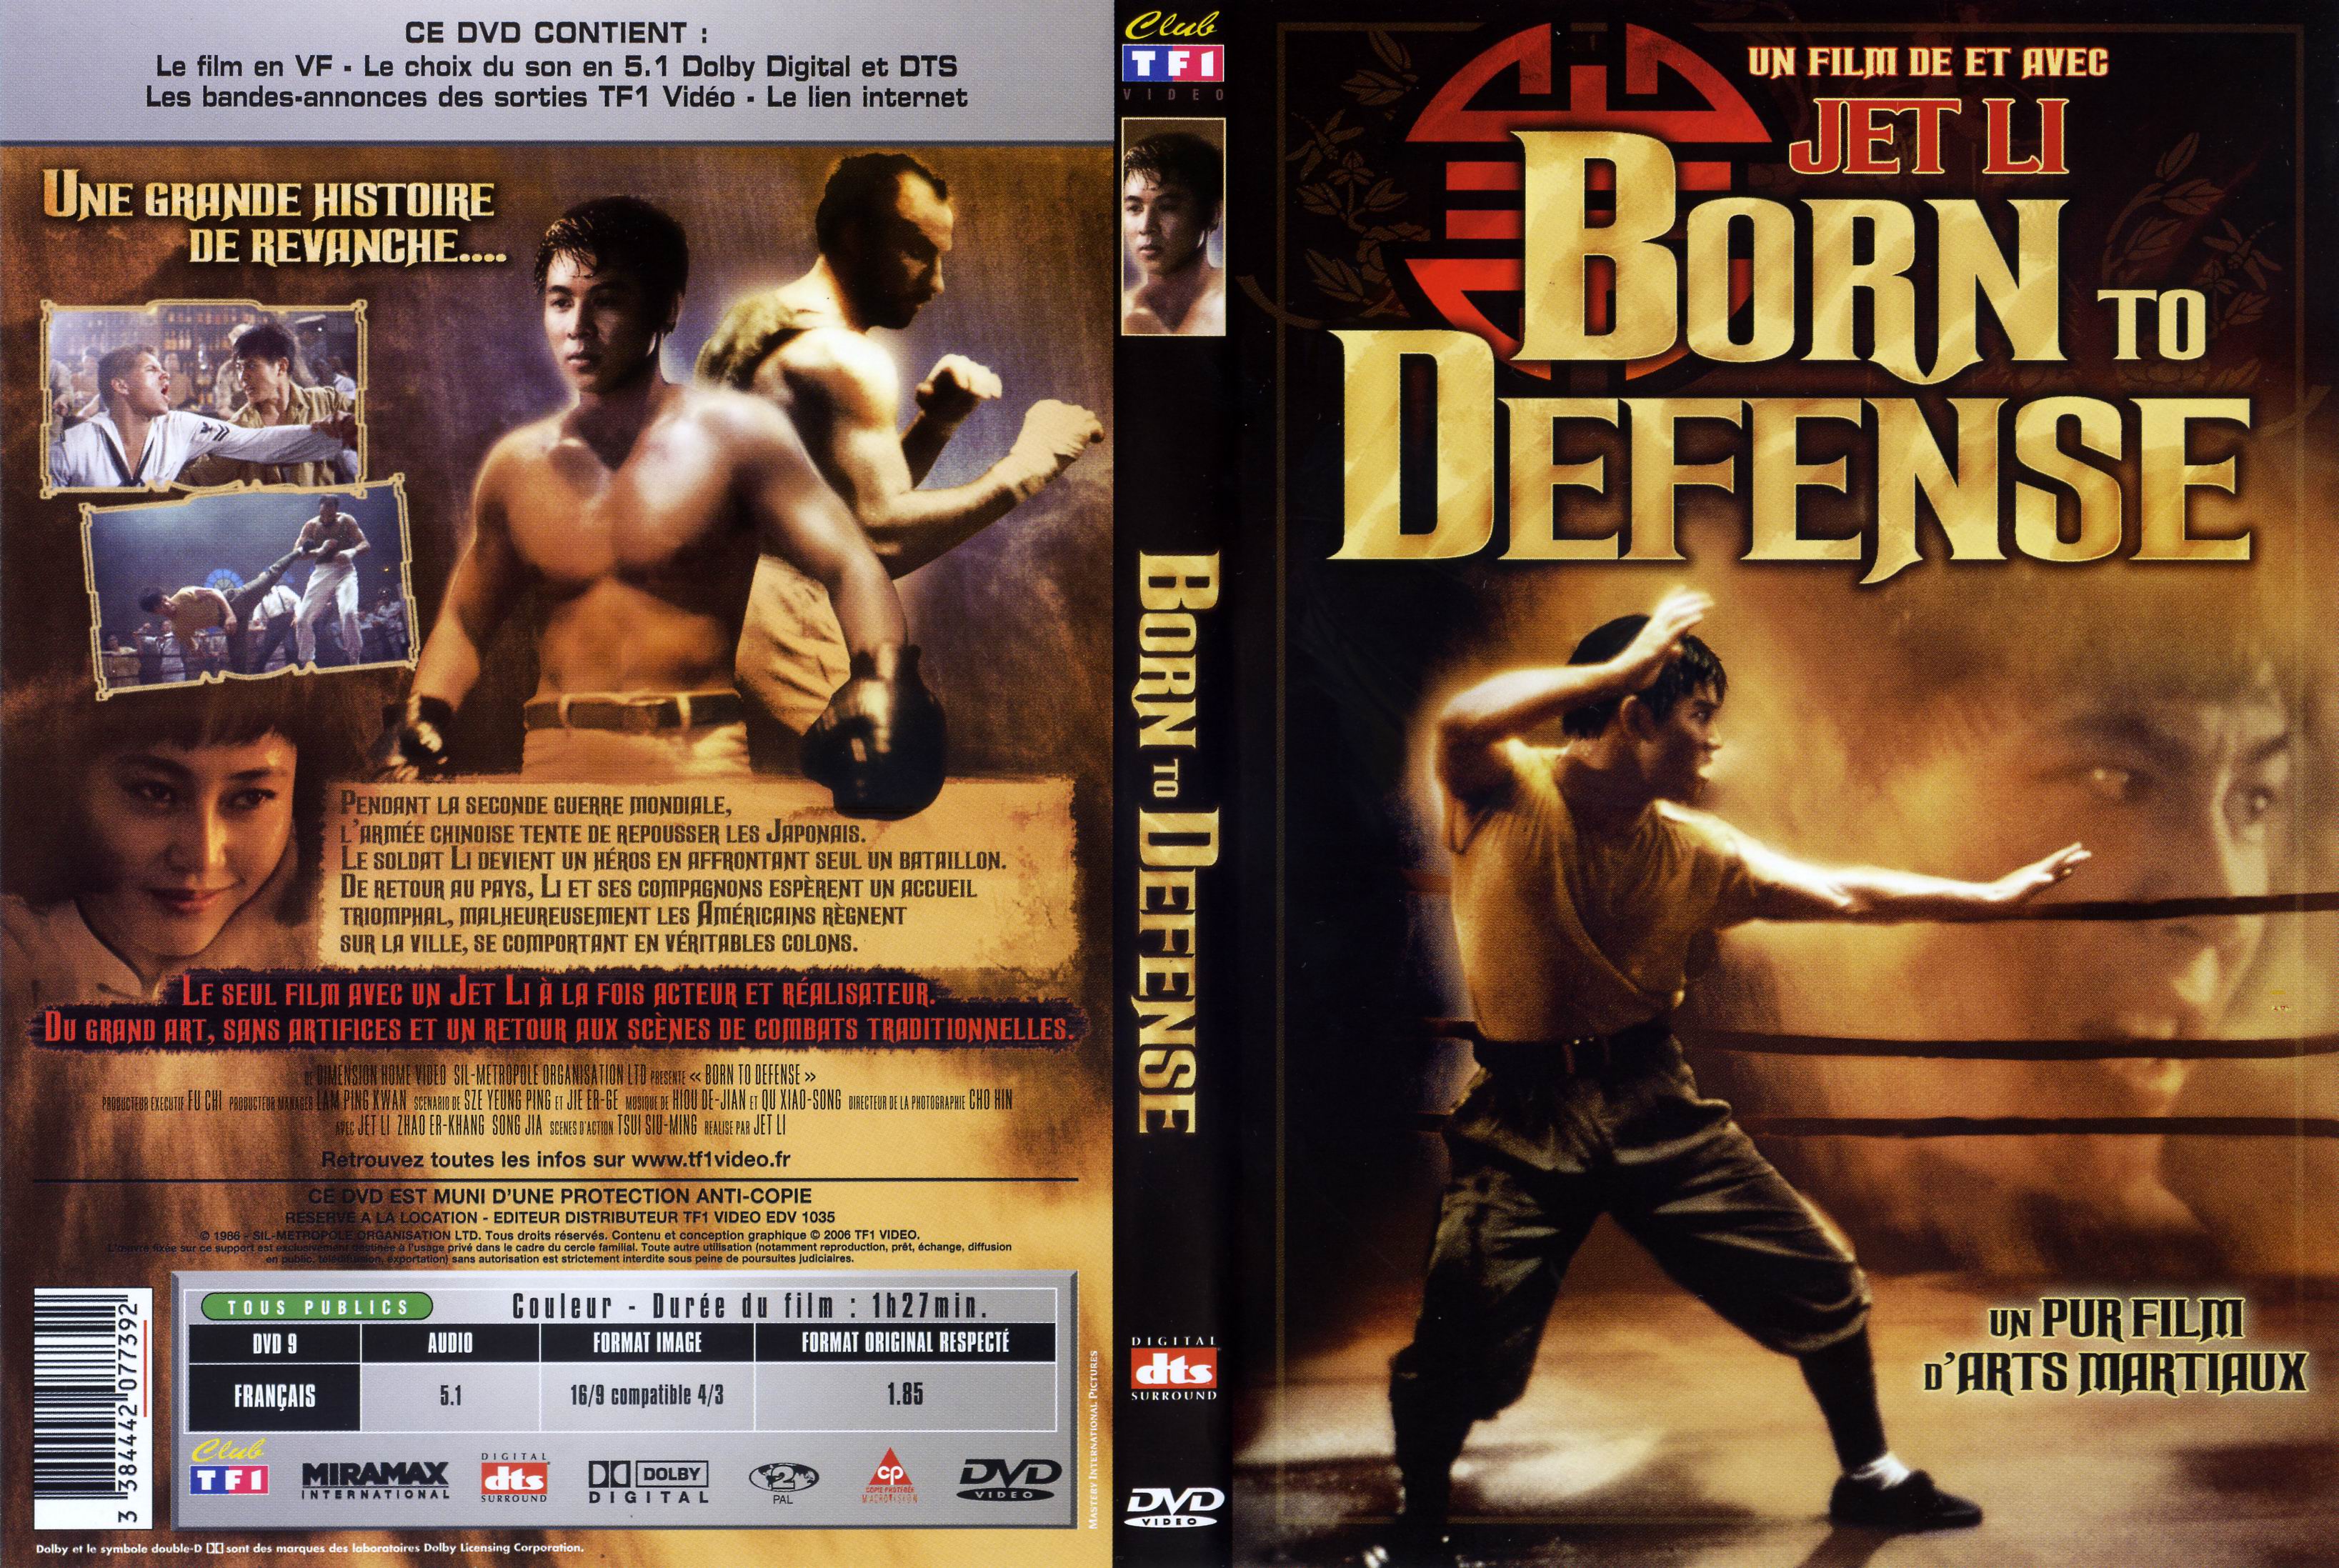 Jaquette DVD Born to defense